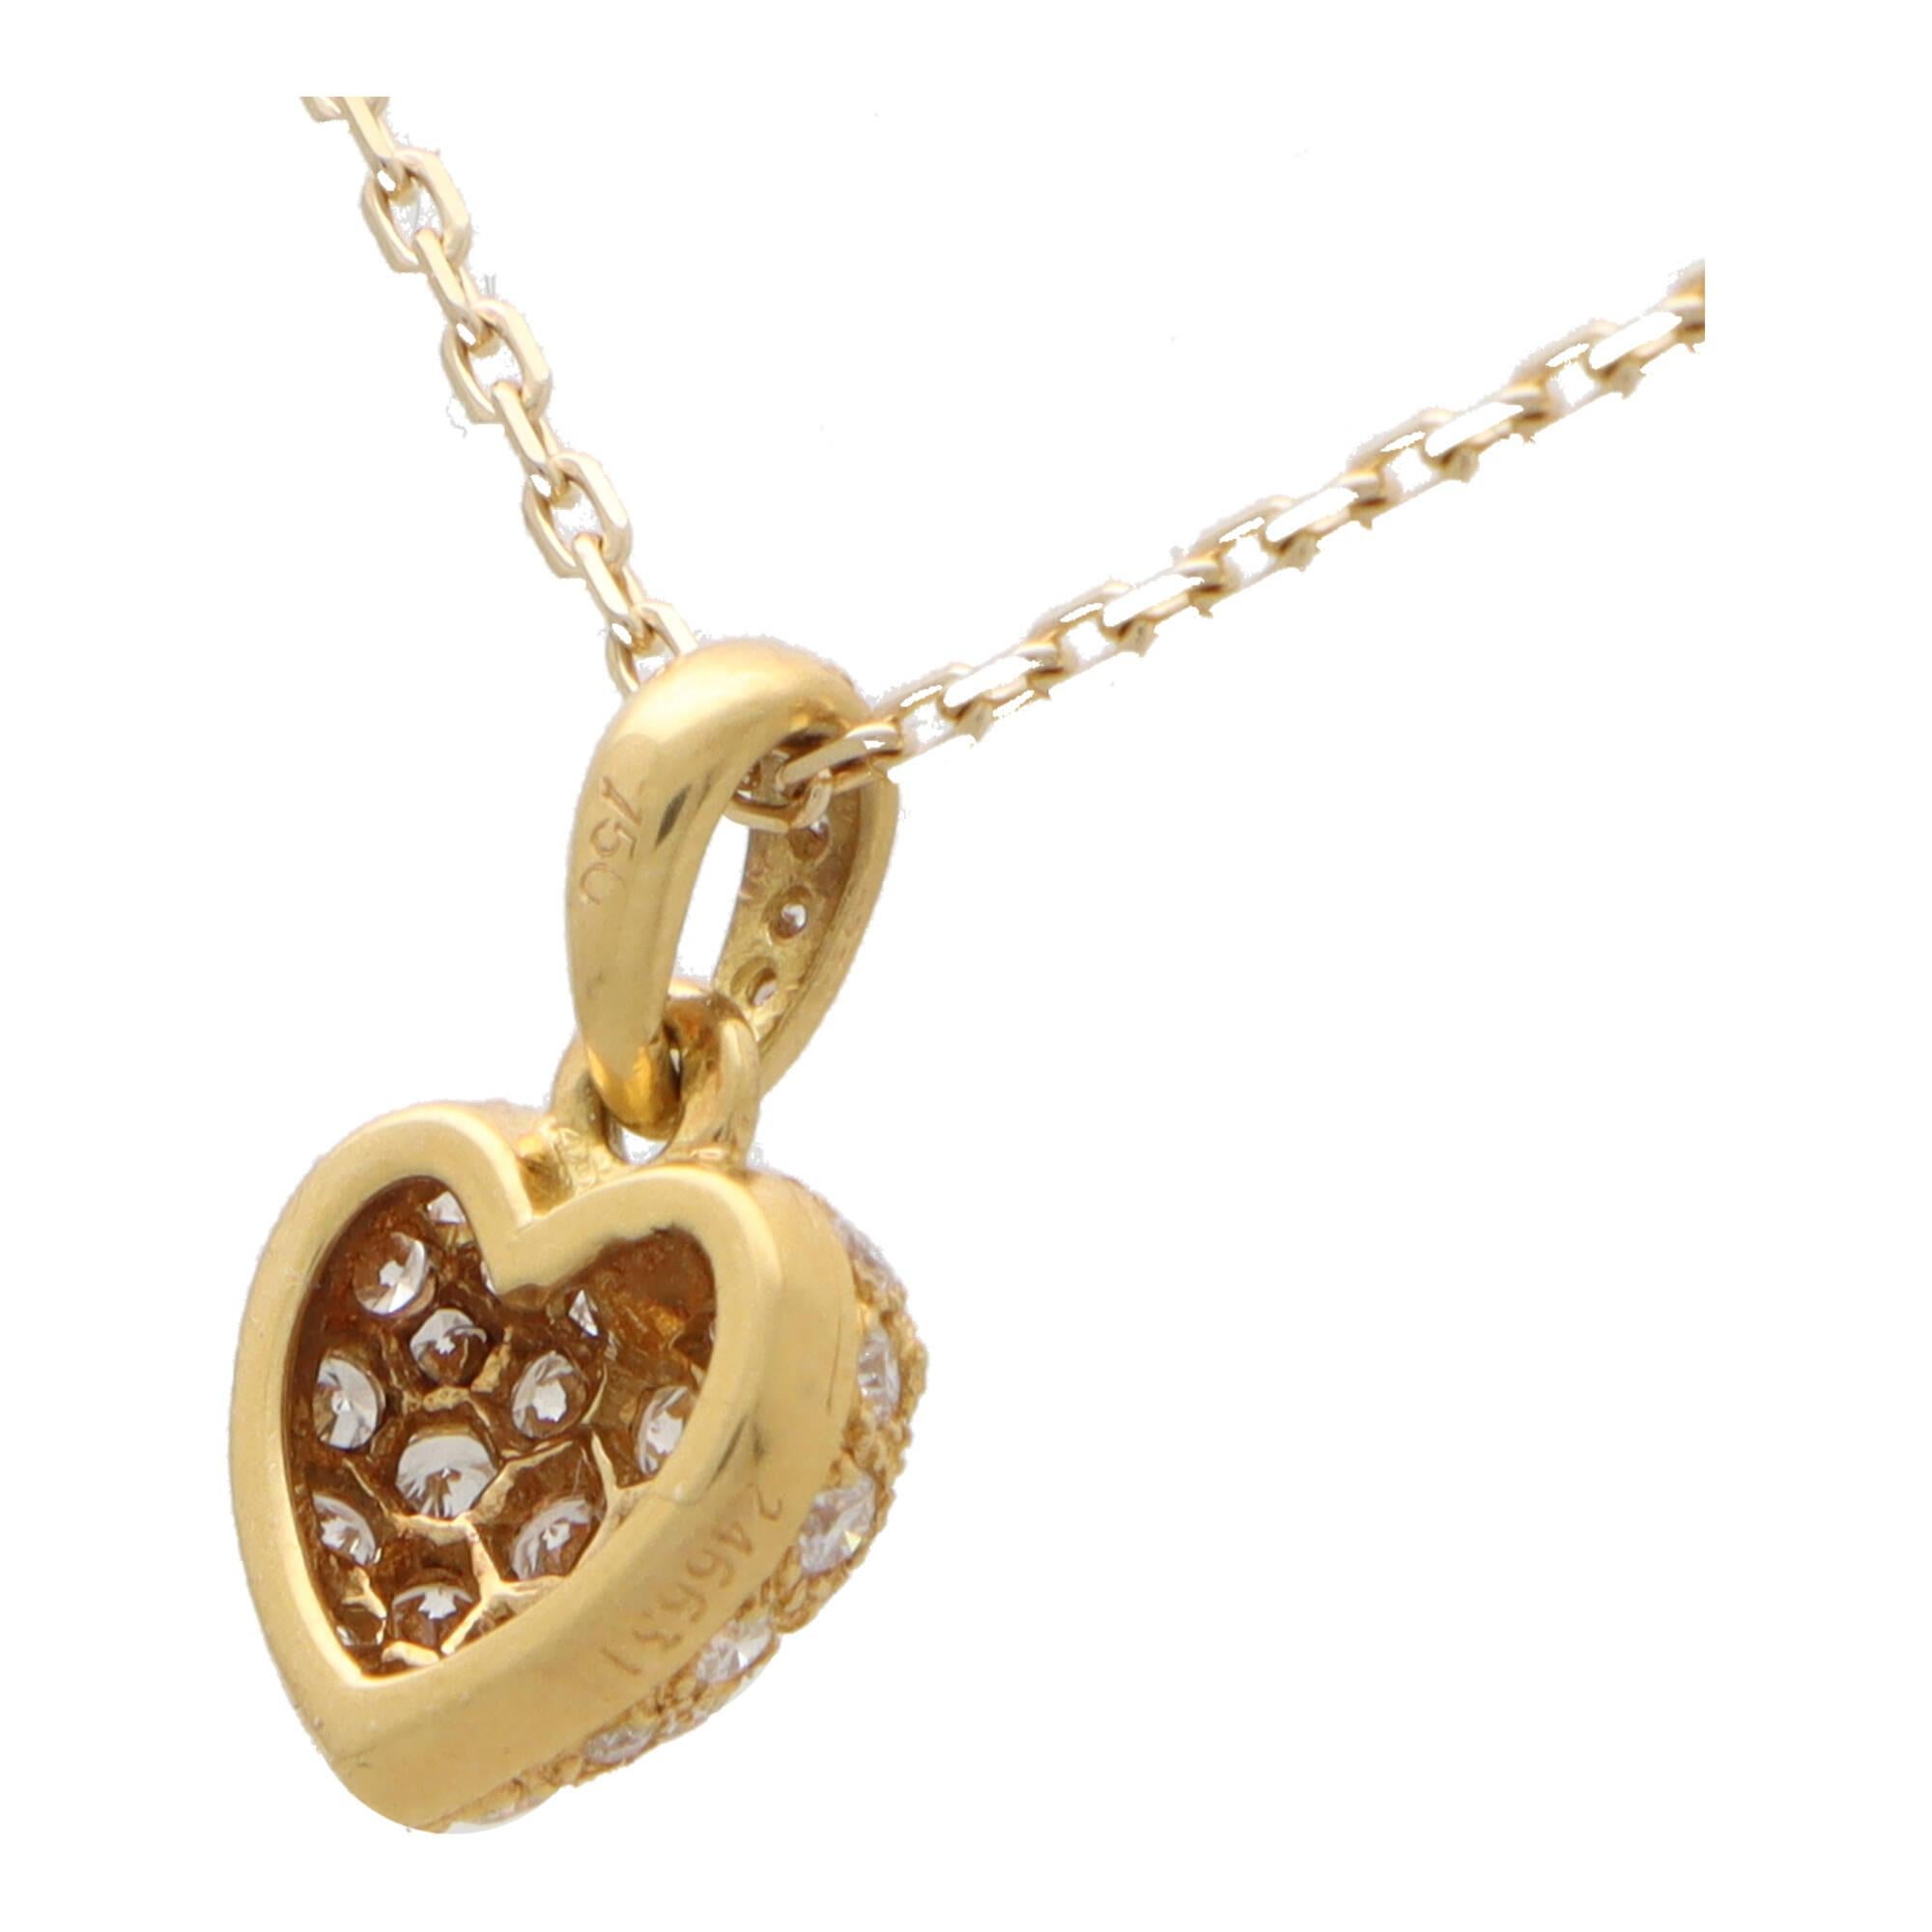 Eine schöne Vintage Cartier Diamant Herz Anhänger Halskette in 18k Gelbgold gesetzt.

Der Anhänger stammt aus einer inzwischen eingestellten Cartier-Kollektion aus den 1990er Jahren und zeigt ein klassisches Herzmotiv. Der Anhänger ist mit ca. 30